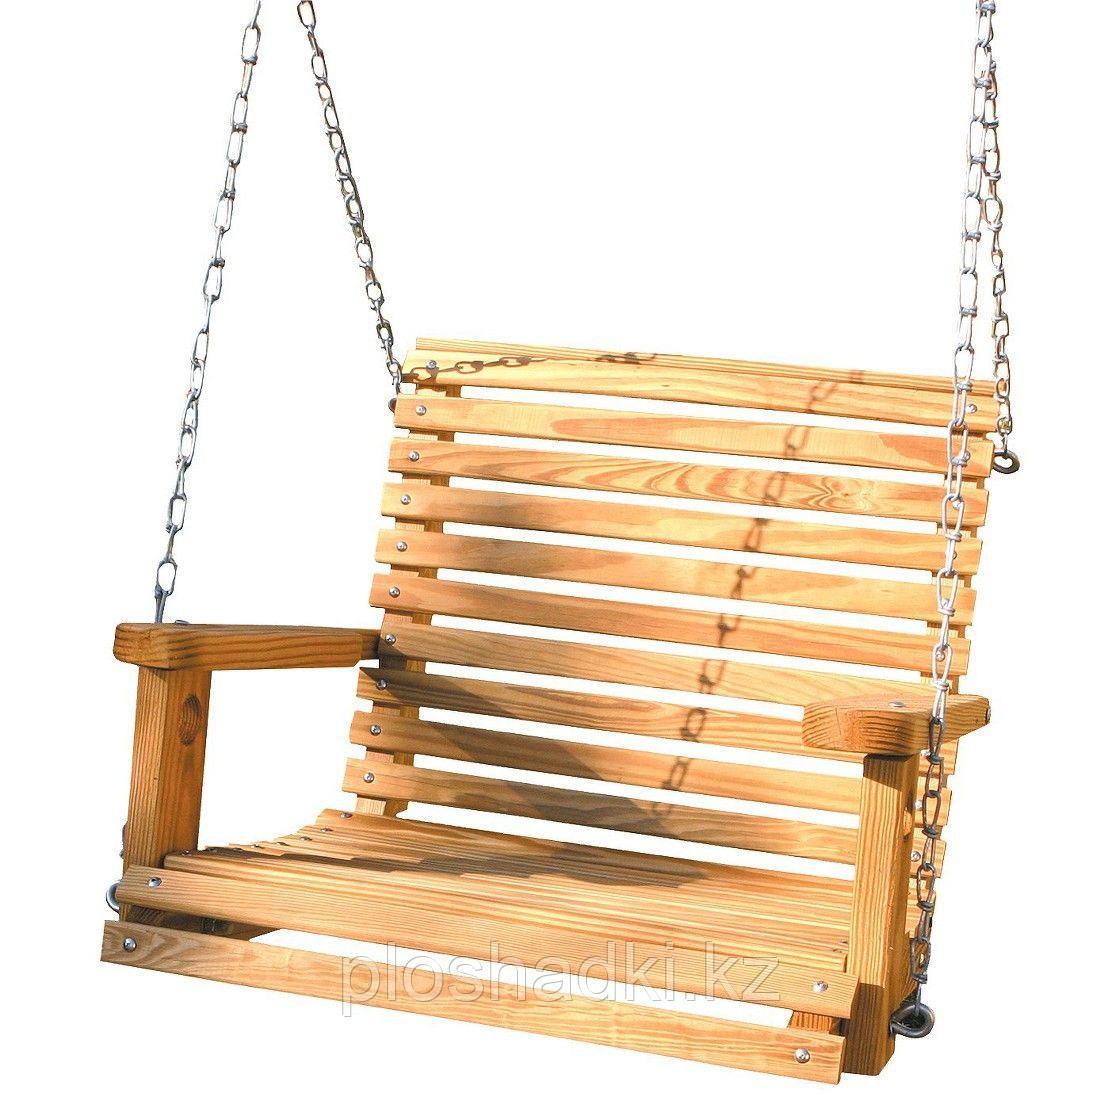 Аксессуар «Качели-кресло деревянные»